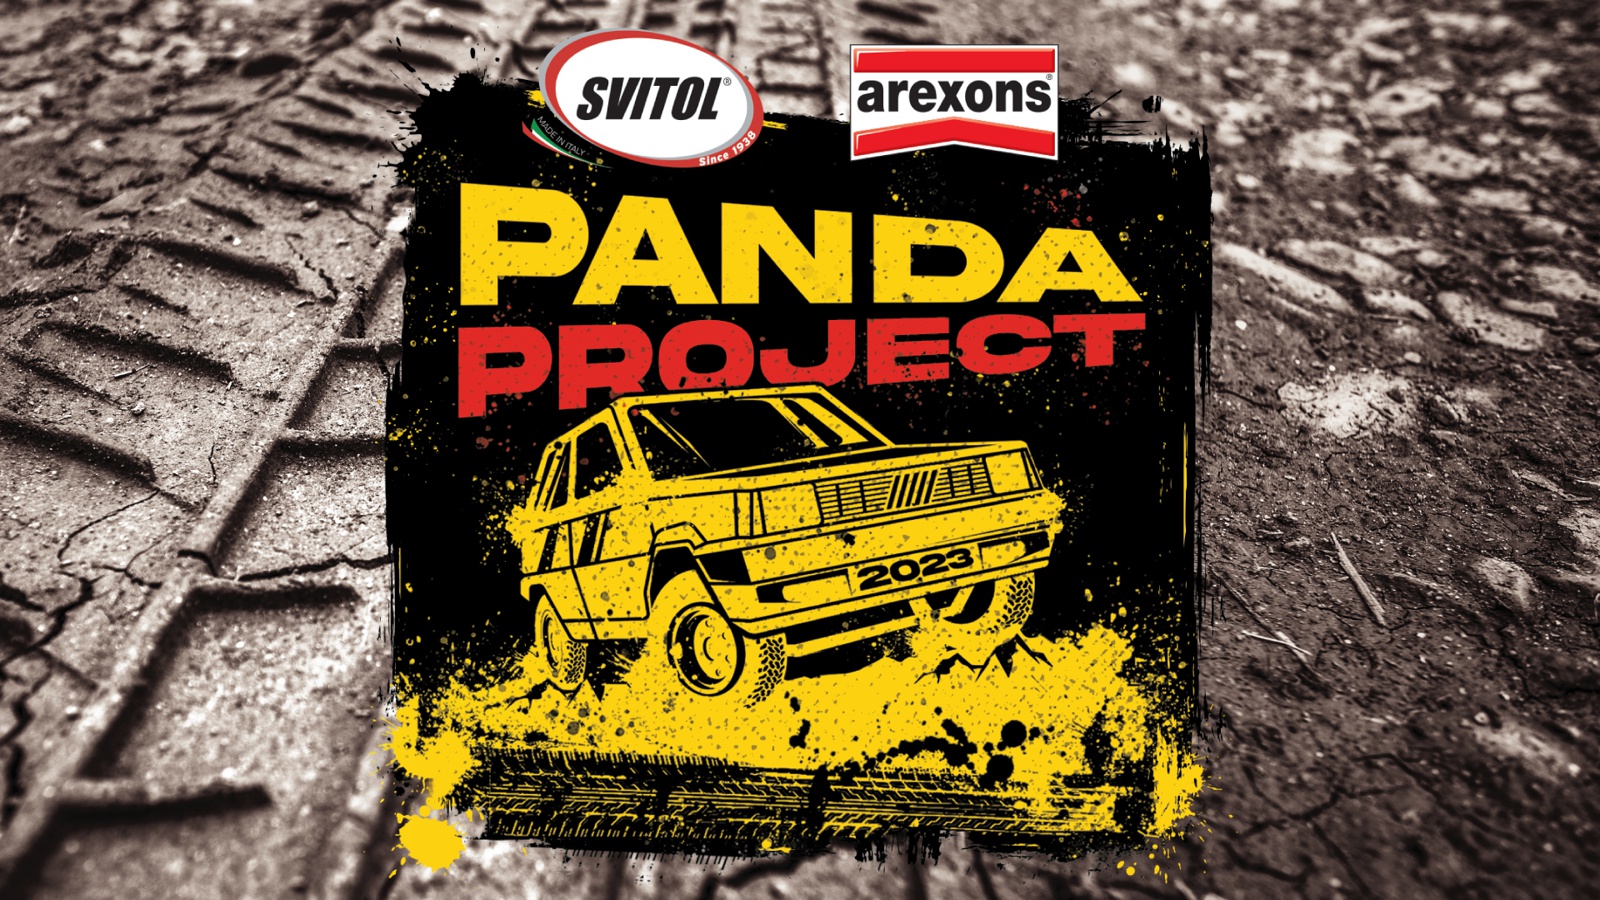 Al via il restauro di una vecchia Fiat Panda 4x4: con Arexons e Svitol  l'iconica vettura tornerà come nuova - Press - News - Arexons